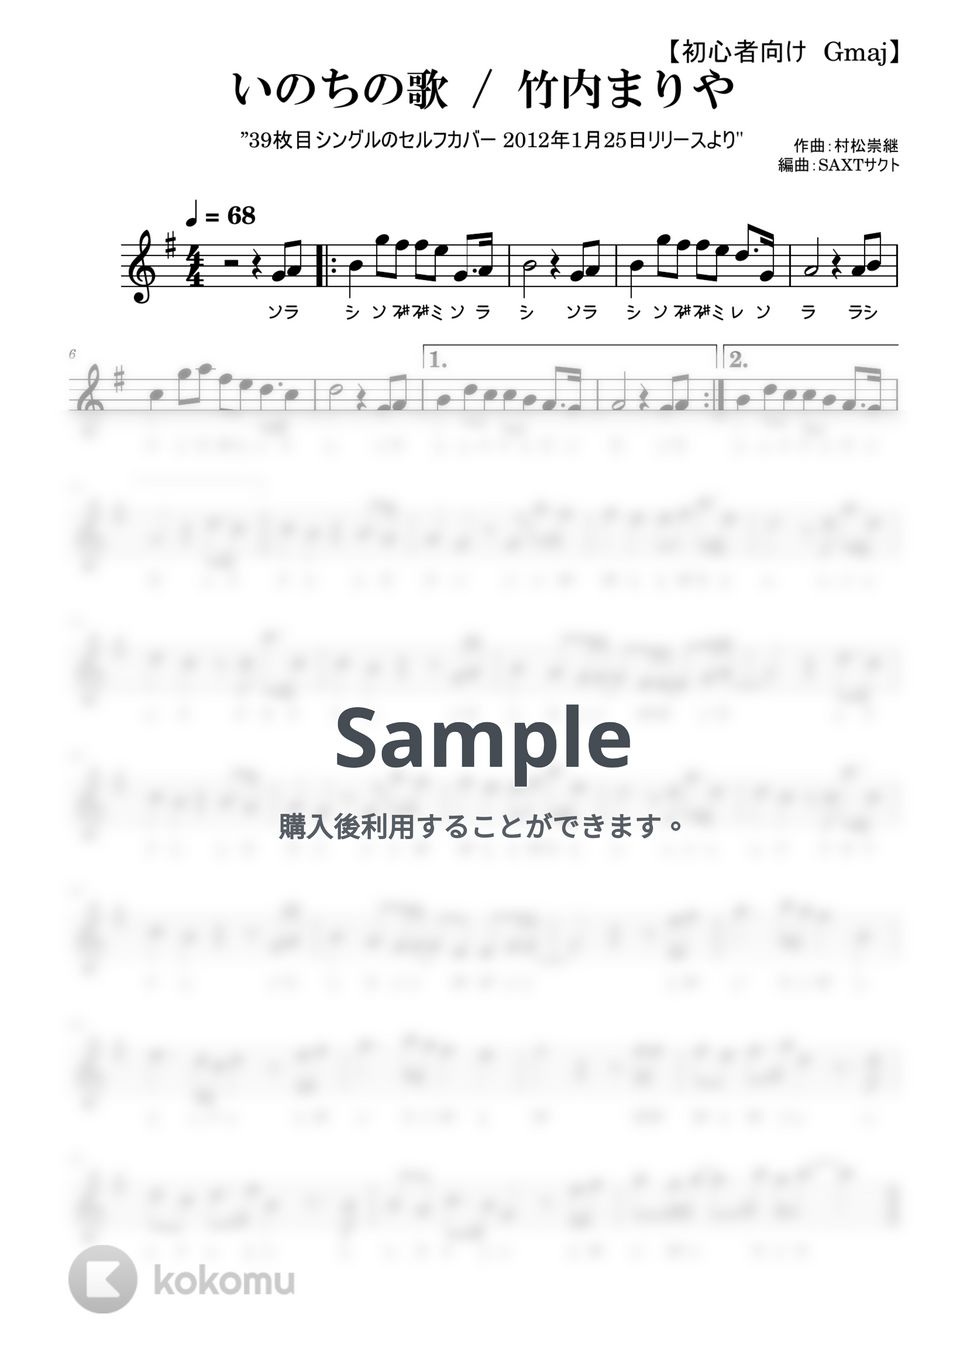 竹内まりや - いのちの歌 (めちゃラク譜) by SAXT